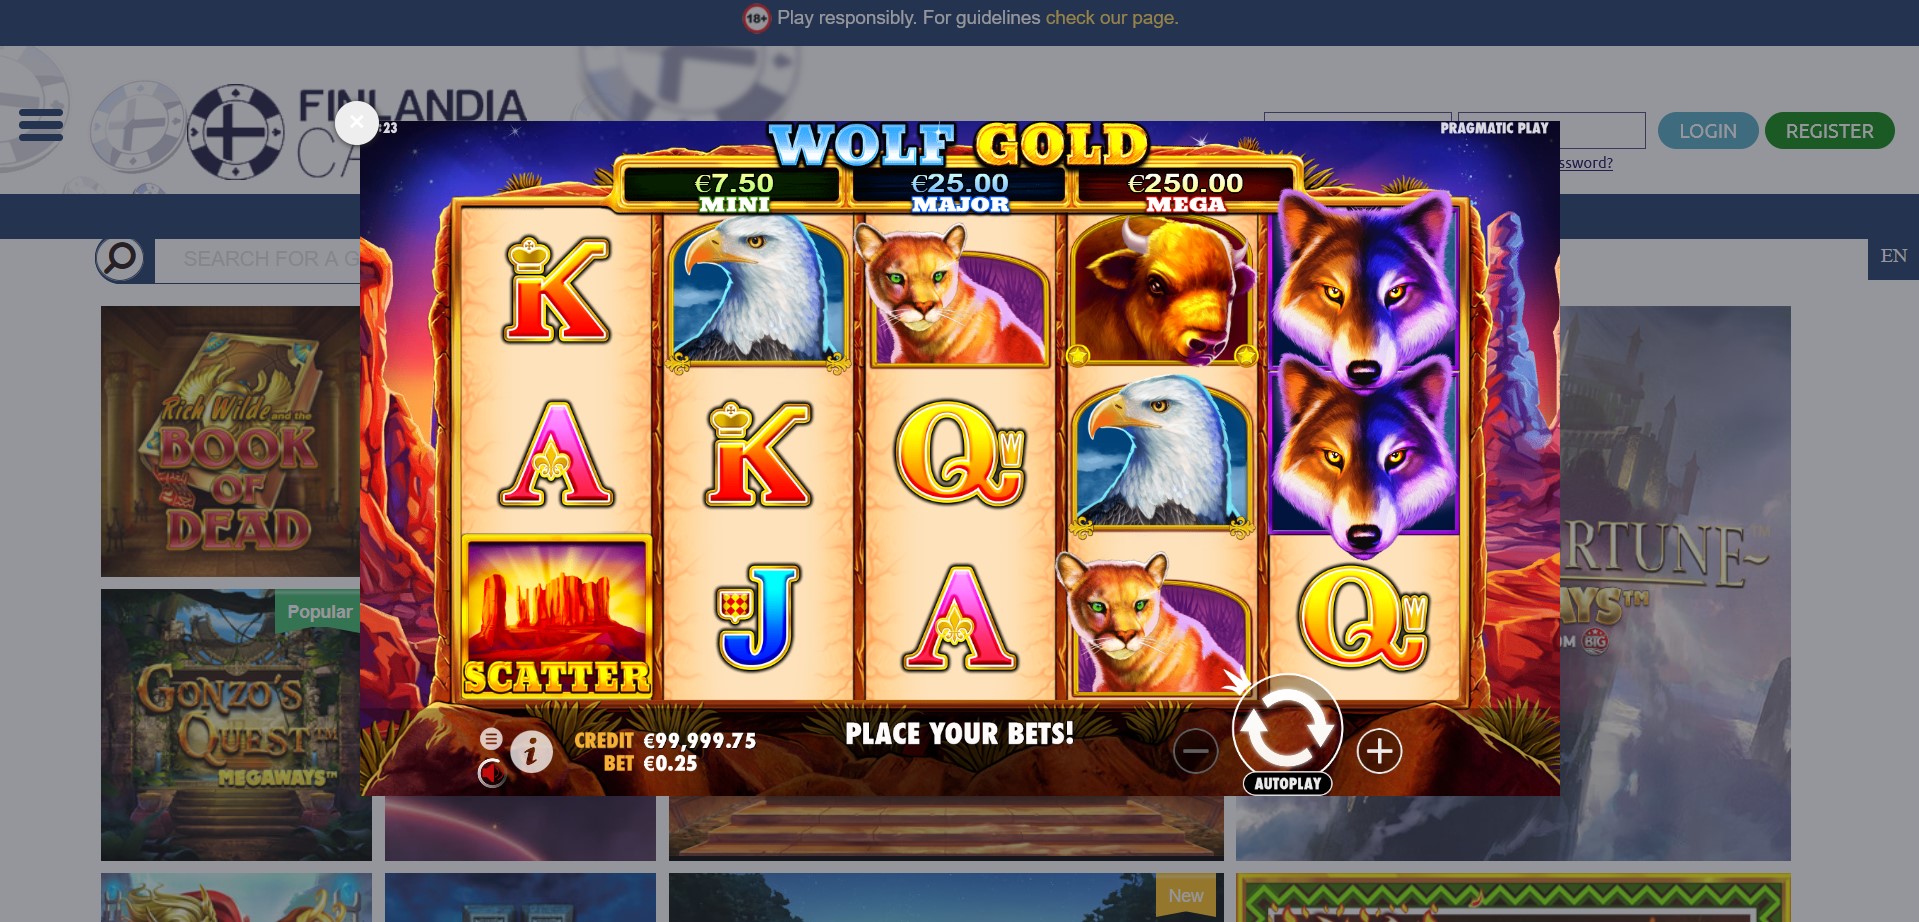 Finlandia Casino Slot Games